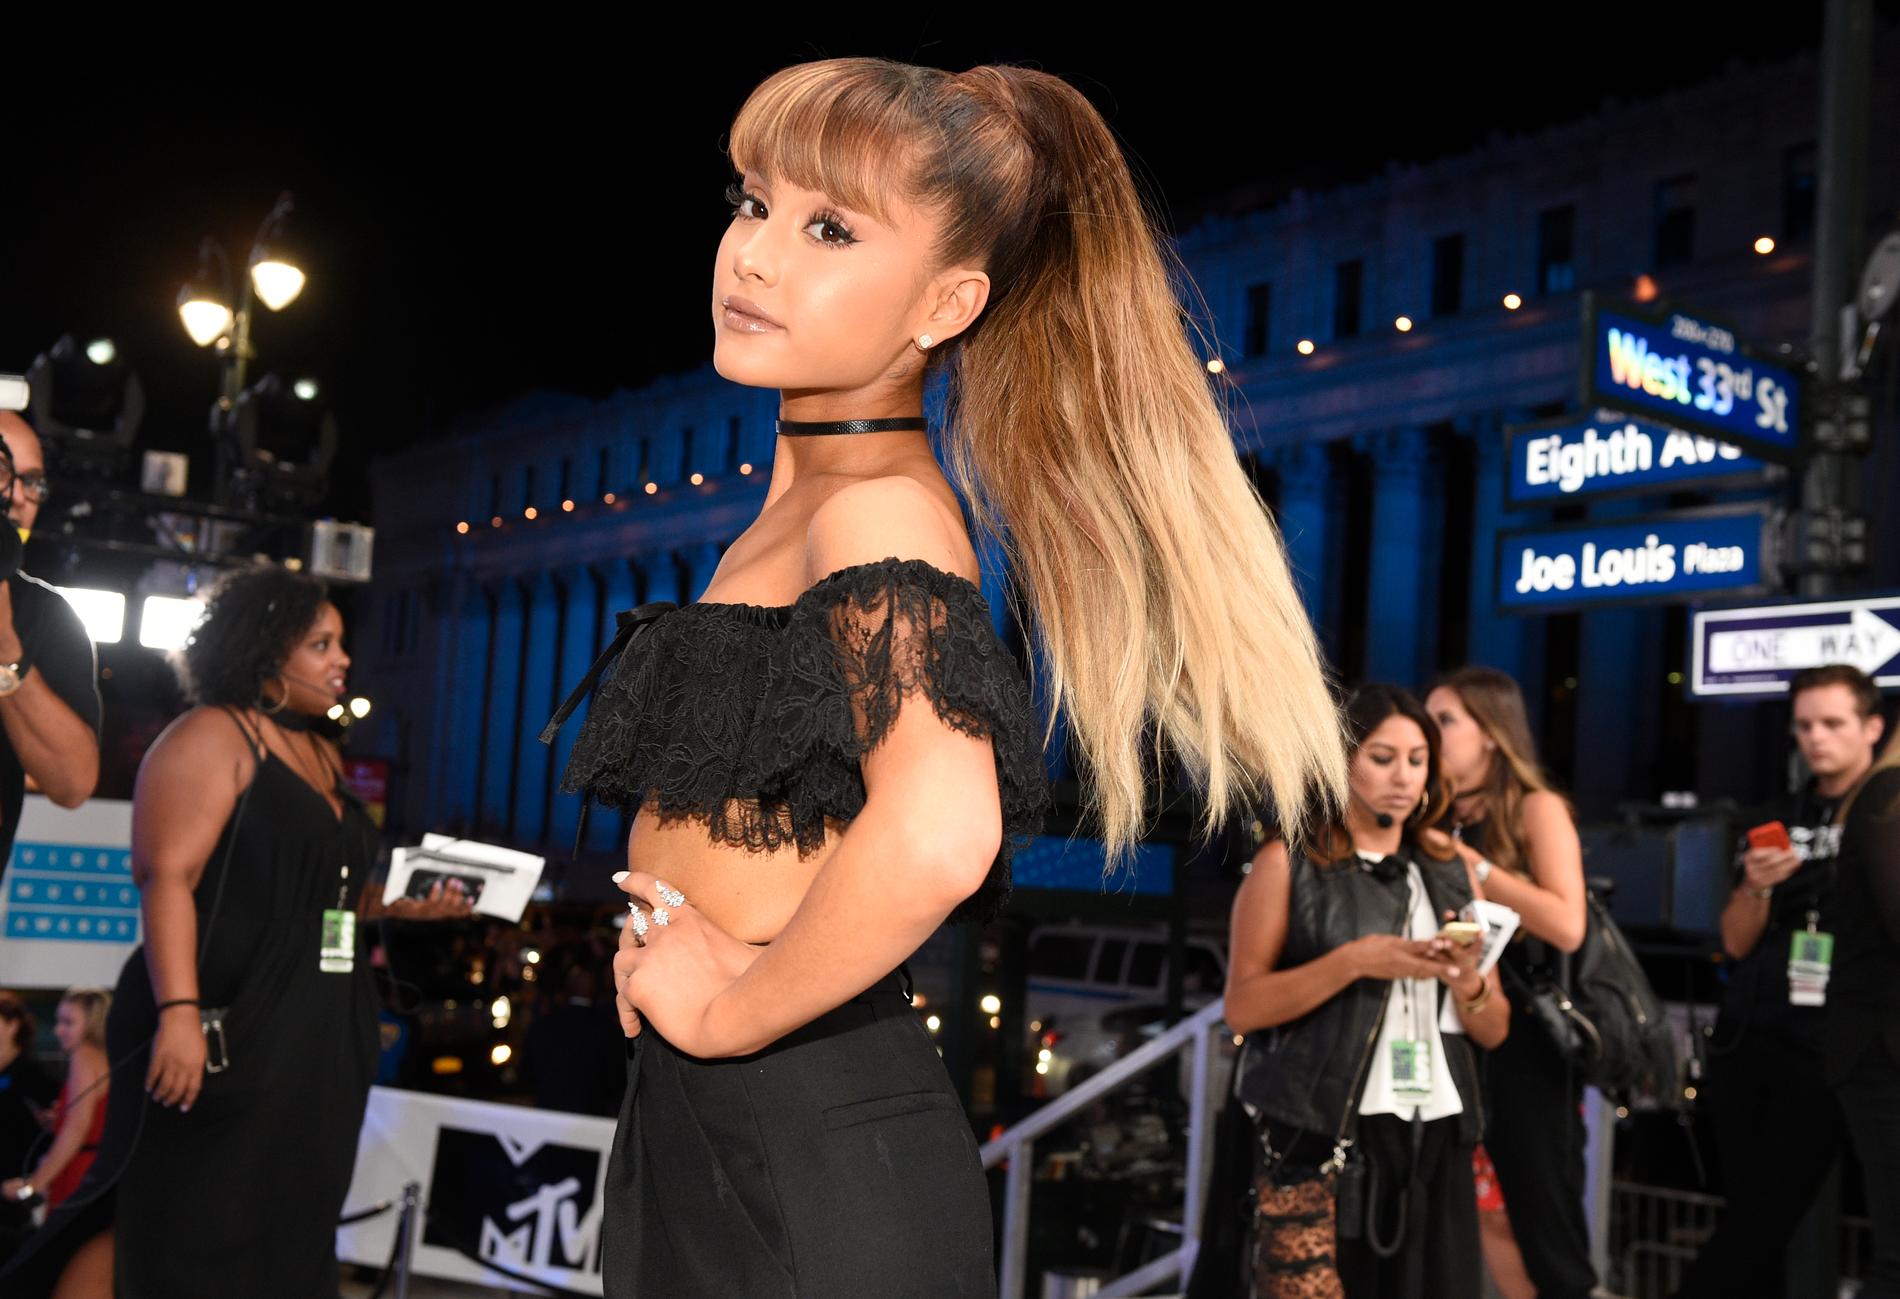 Ariana Grande ”är okej” efter händelserna vid Manchester arena, uppger Variety.